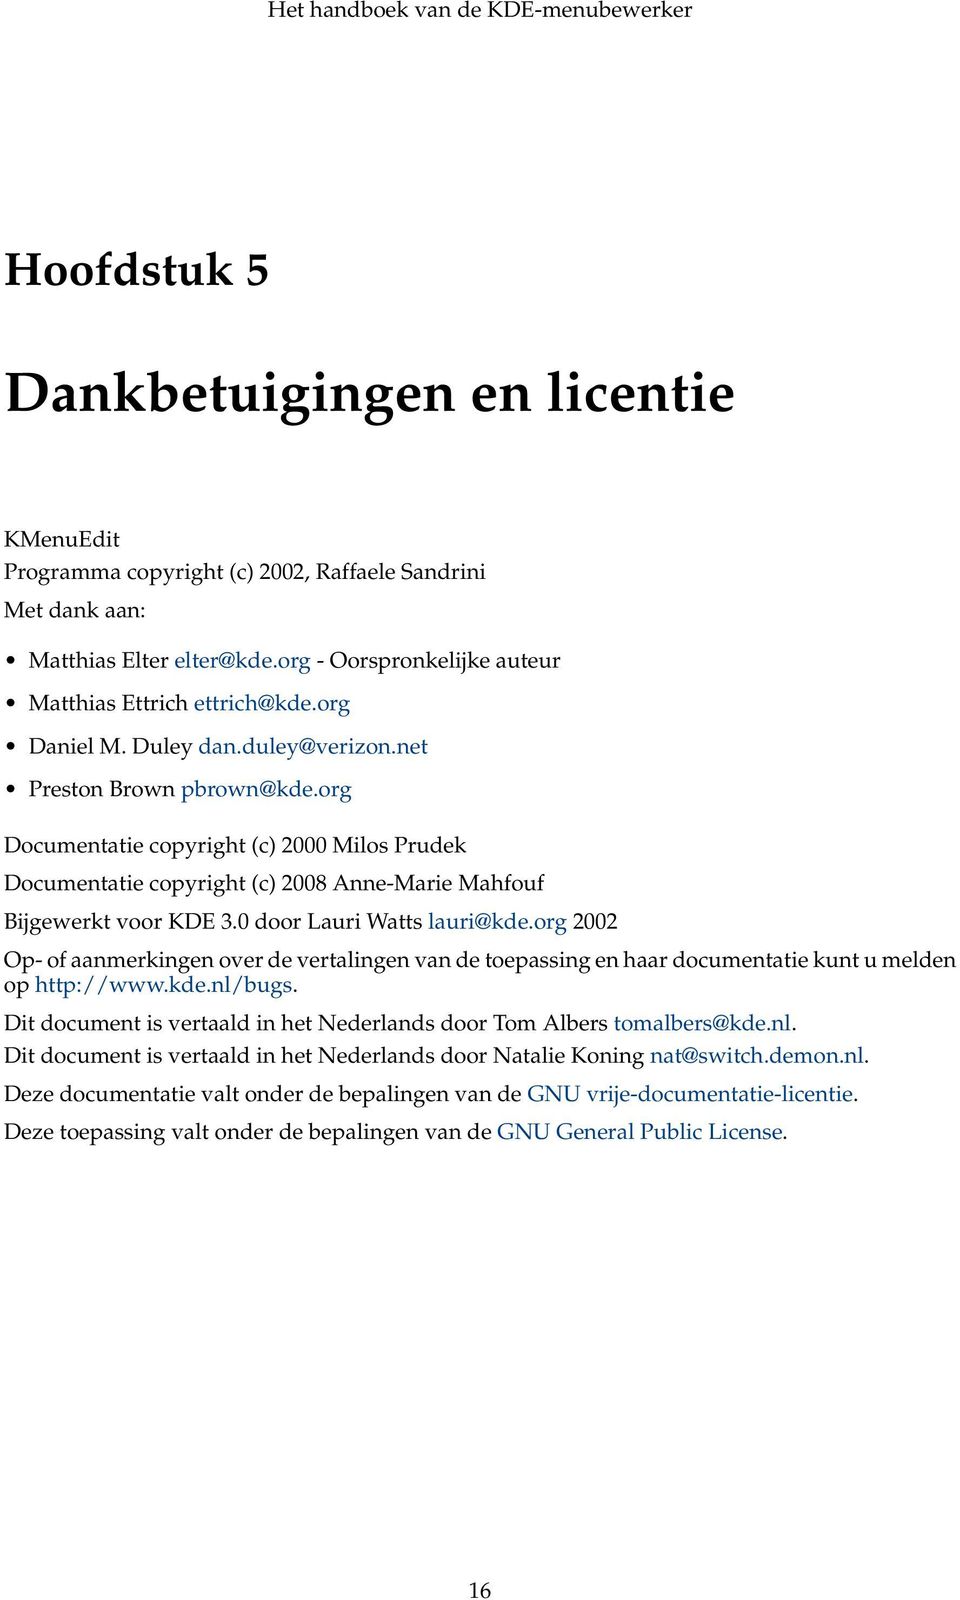 0 door Lauri Watts lauri@kde.org 2002 Op- of aanmerkingen over de vertalingen van de toepassing en haar documentatie kunt u melden op http://www.kde.nl/bugs.